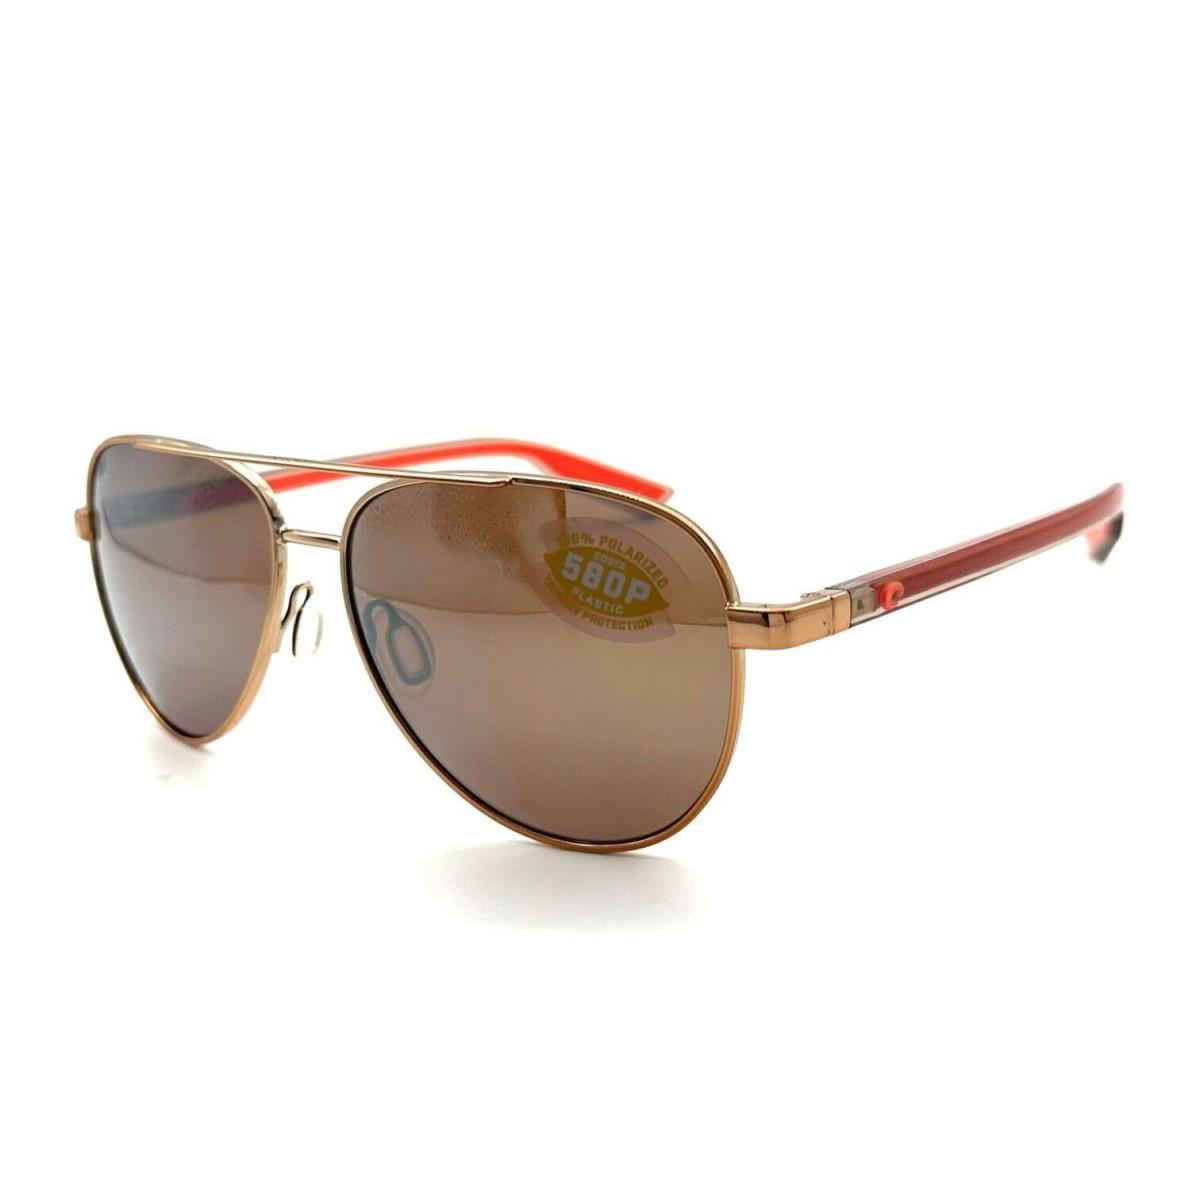 Costa Del Mar Peli Sunglasses Shiny Rose Gold/copper Silver Mirror 580Plastic - Frame: Shiny Rose Gold, Lens: Copper Silver Mirror 580Plastic